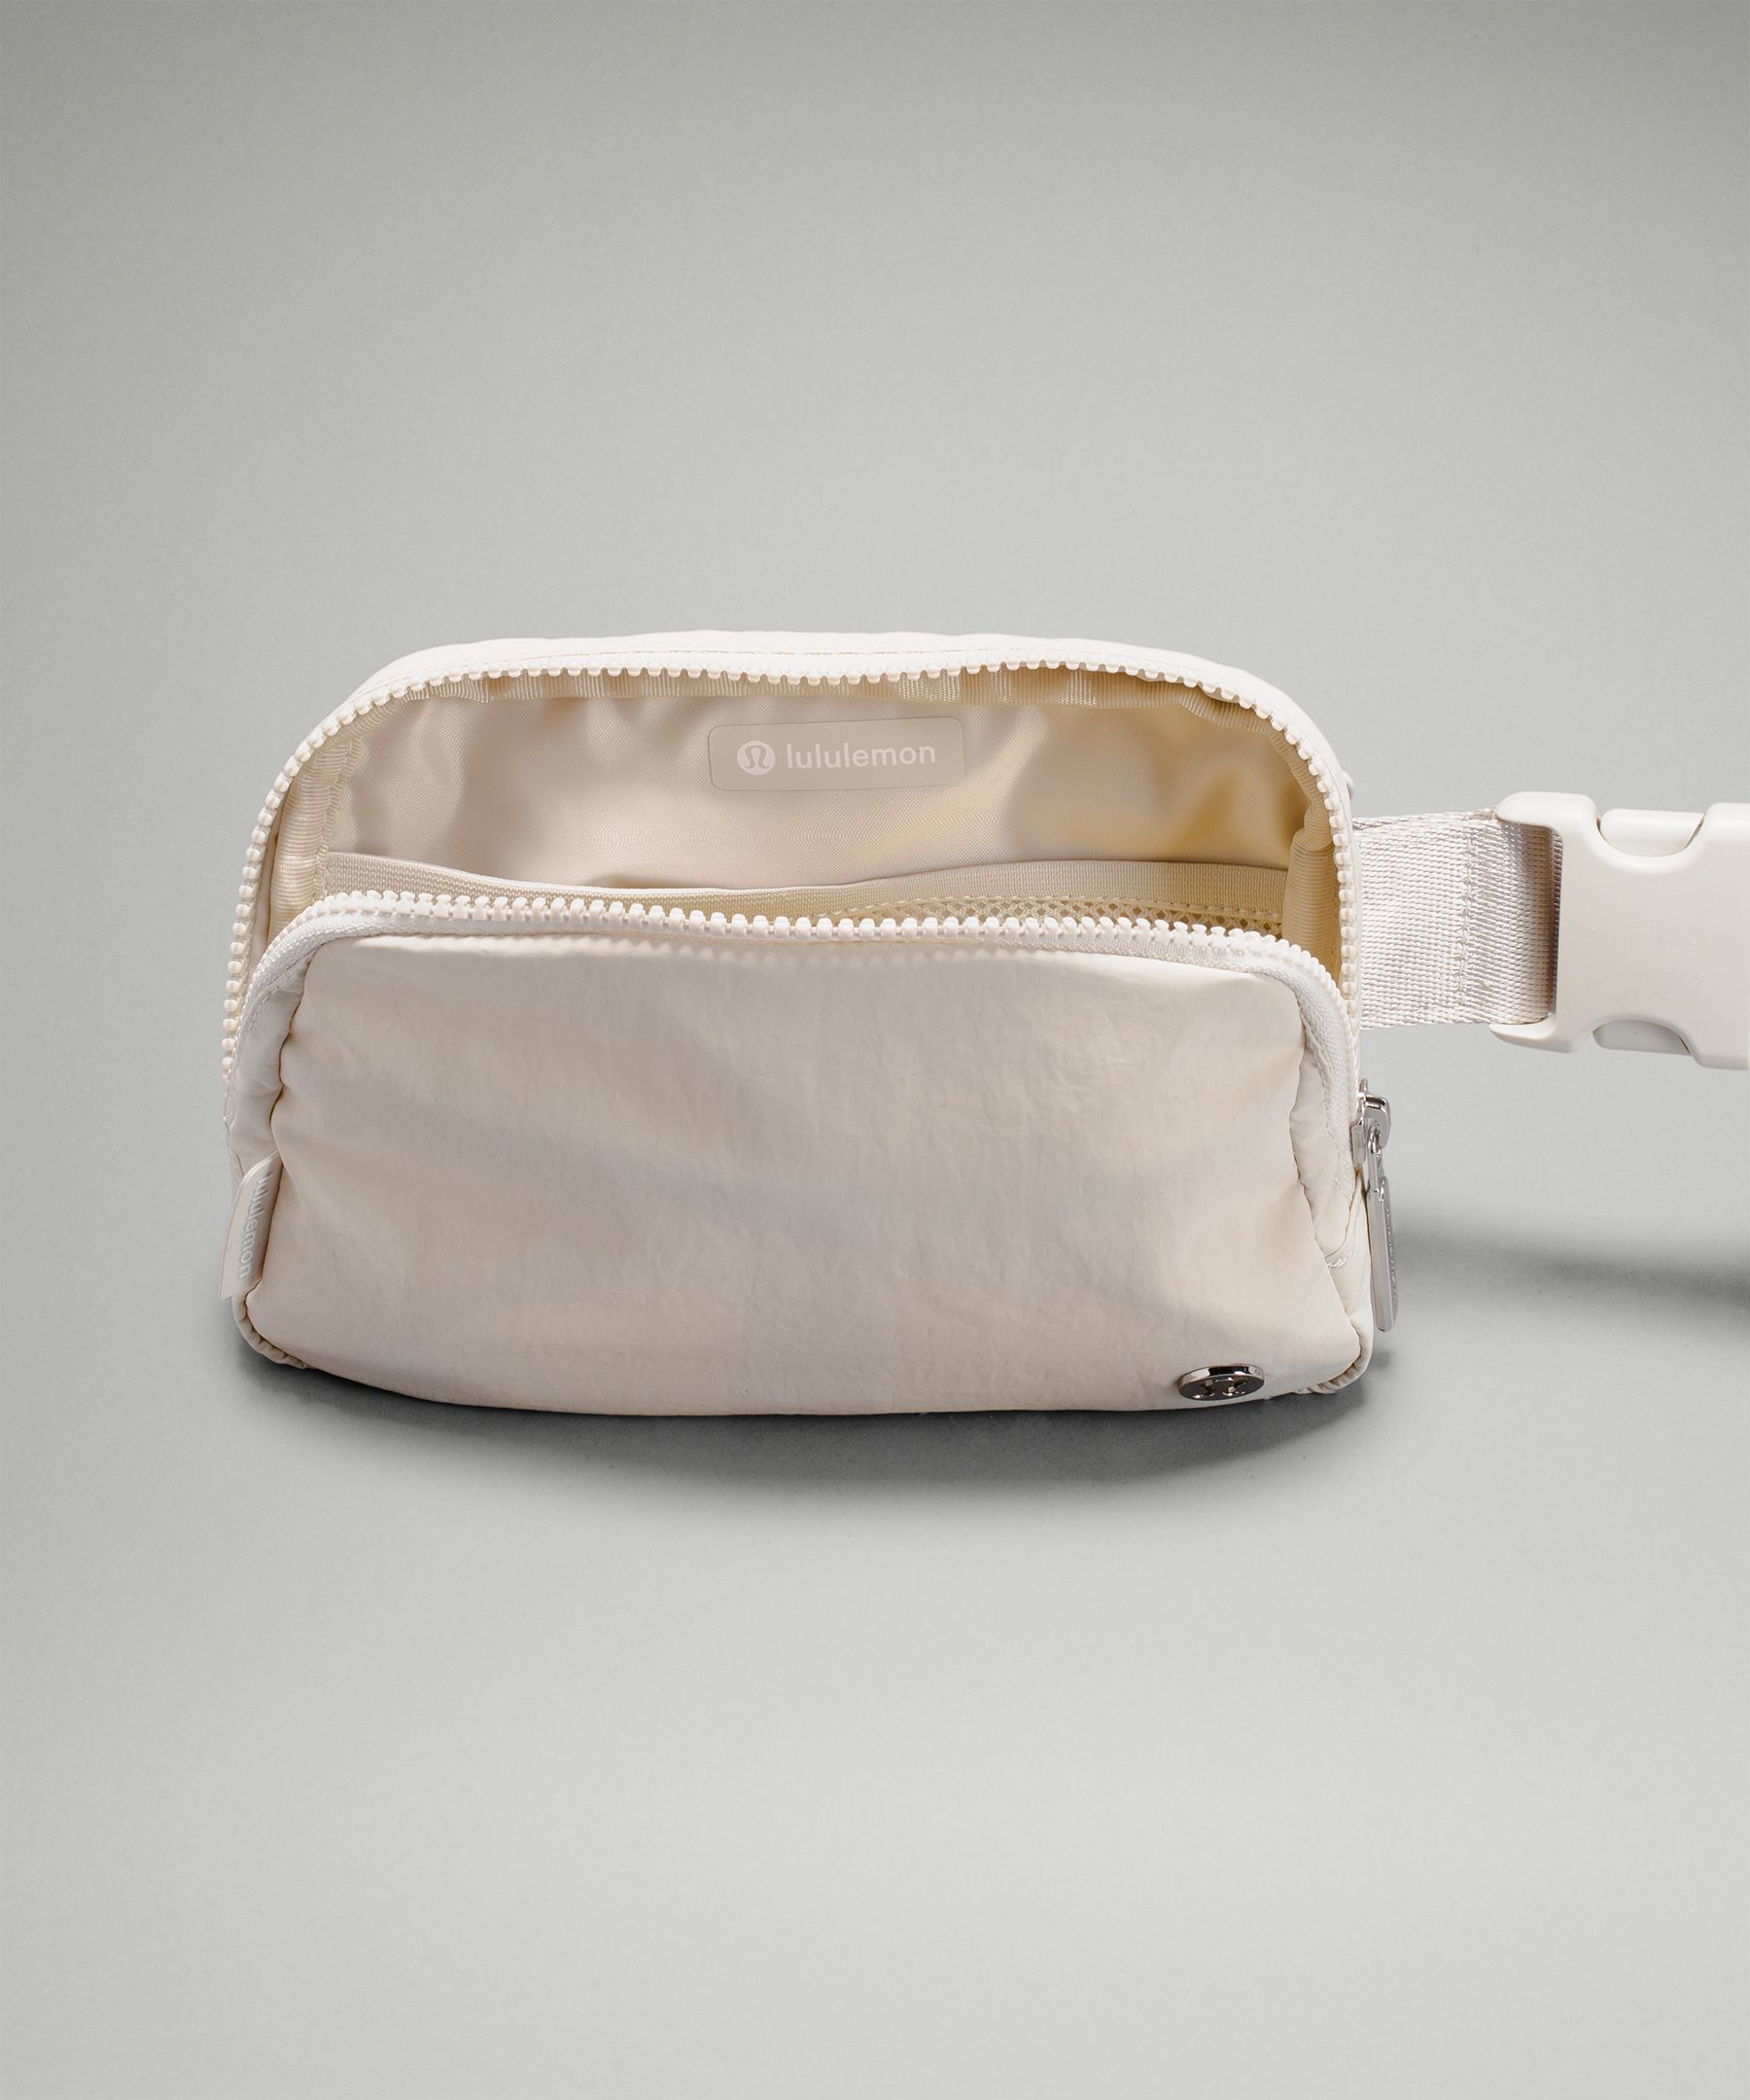 lululemon belt bag: Shop the lululemon fanny pack restock